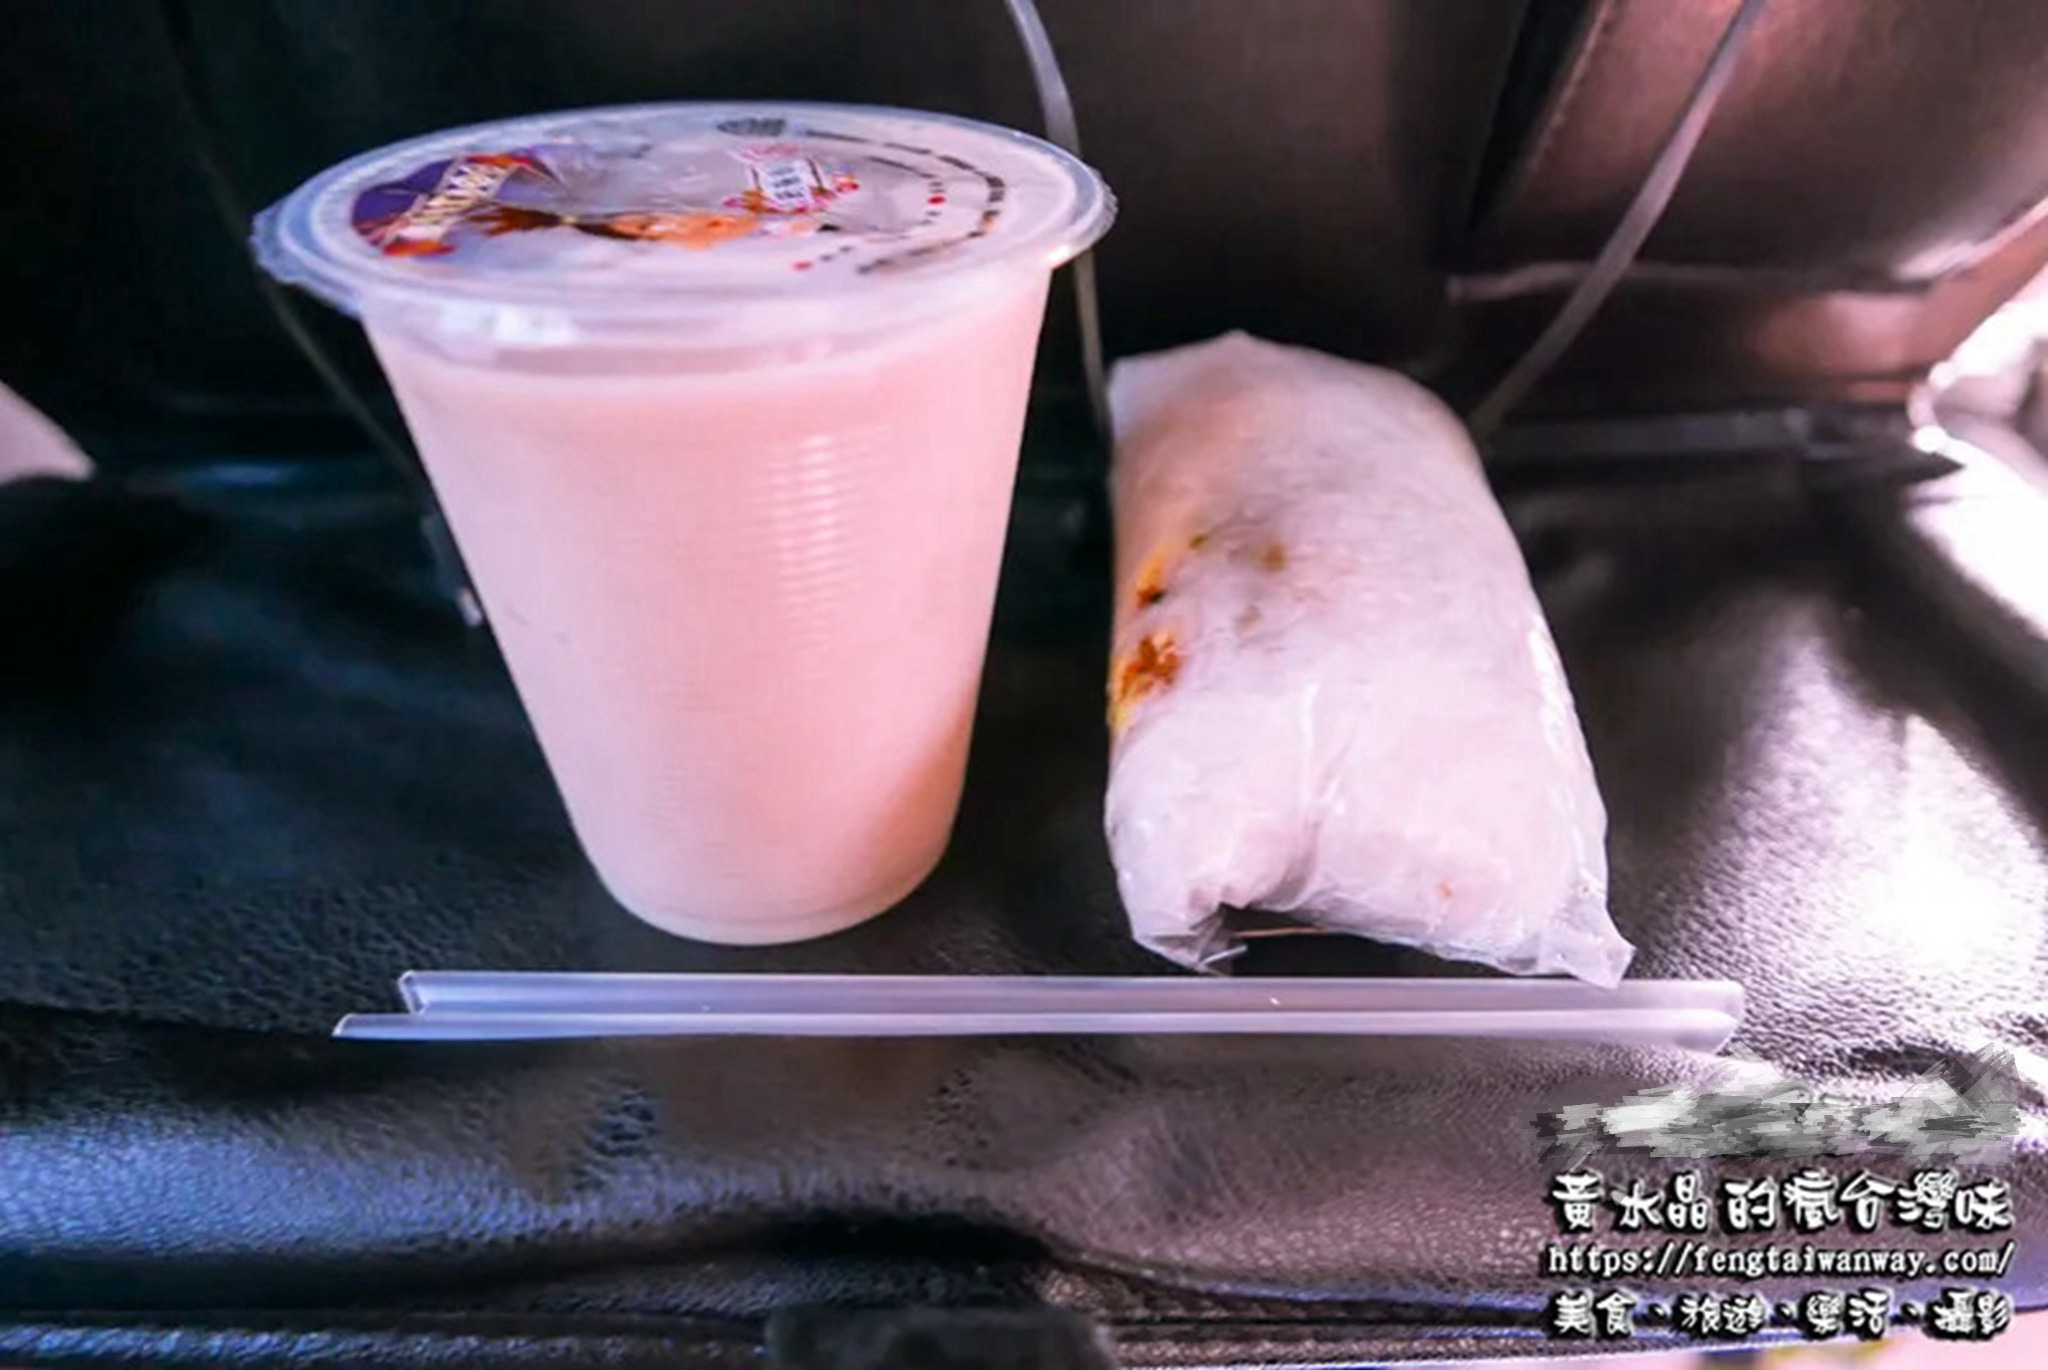 二信早餐飯糰專賣店【澎湖美食】|來馬公必吃的人氣排隊糯米飯糰